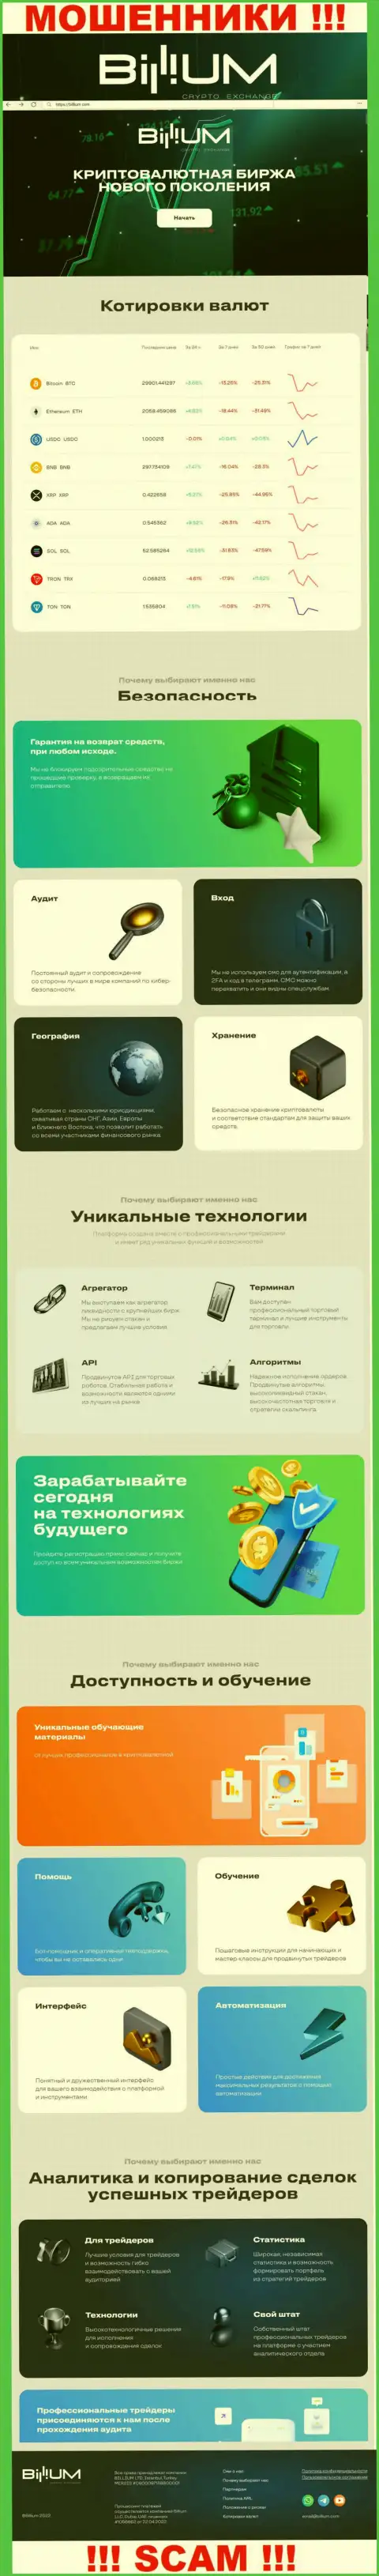 Сведения об официальном web-портале мошенников Биллиум Финанс ЛЛК